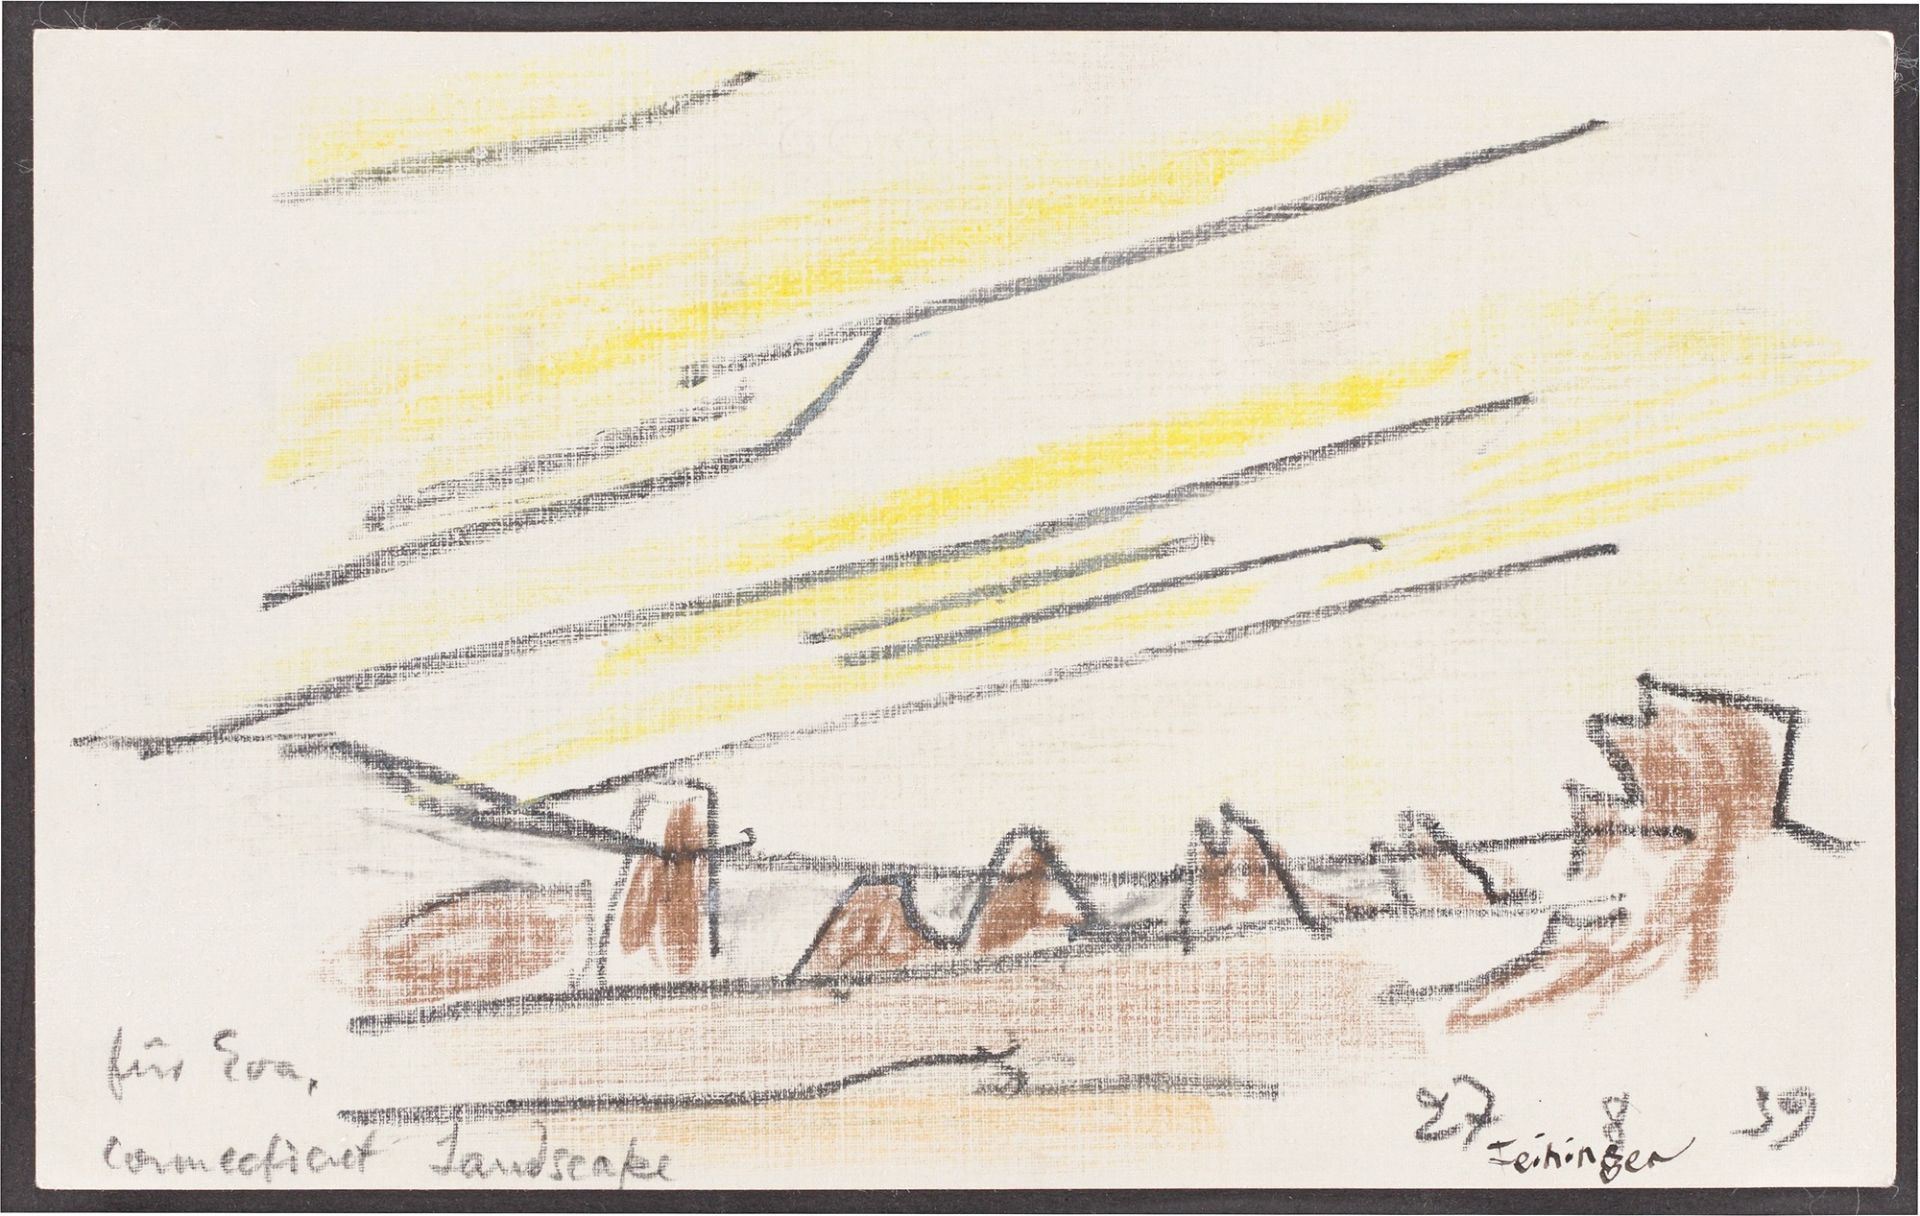 Lyonel Feininger. ”Connecticut Landscape”. 1939 - Image 2 of 4